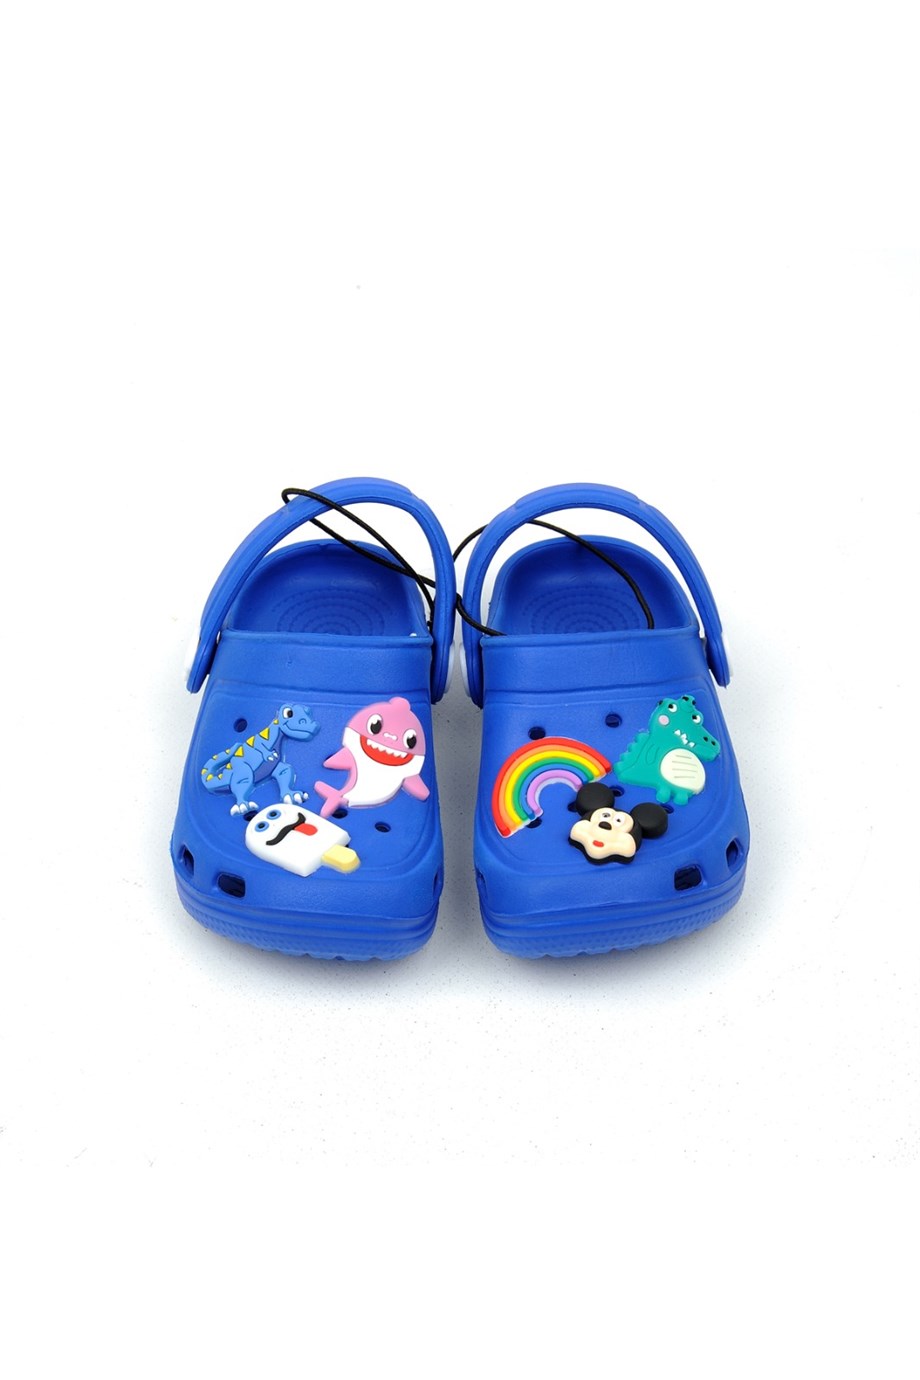 Crocs Tarz Model Sandalet Terlik Mickey Dinazor Süslü Erkek Çocuk Saks Mavi